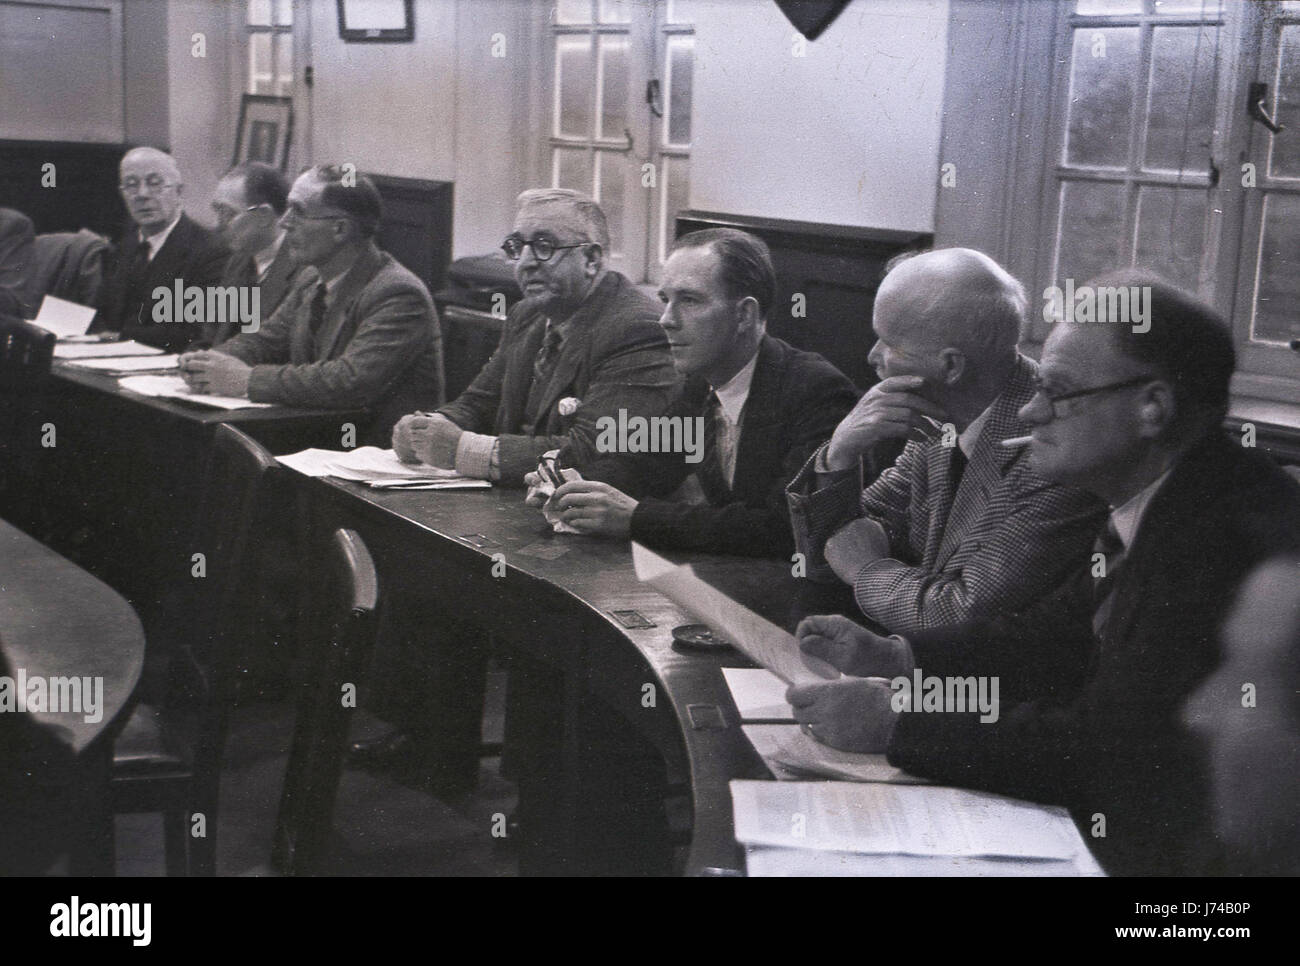 Das Bild aus den 1950er Jahren zeigt männliche Stadträte, die Jacke und Krawatten tragen, an einem geschwungenen Holztisch sitzen, mit dem Protokoll oder der Tagesordnung, in der Kammer bei einer Sitzung des bezirksrats in Aylesbury, England, Großbritannien. Stockfoto